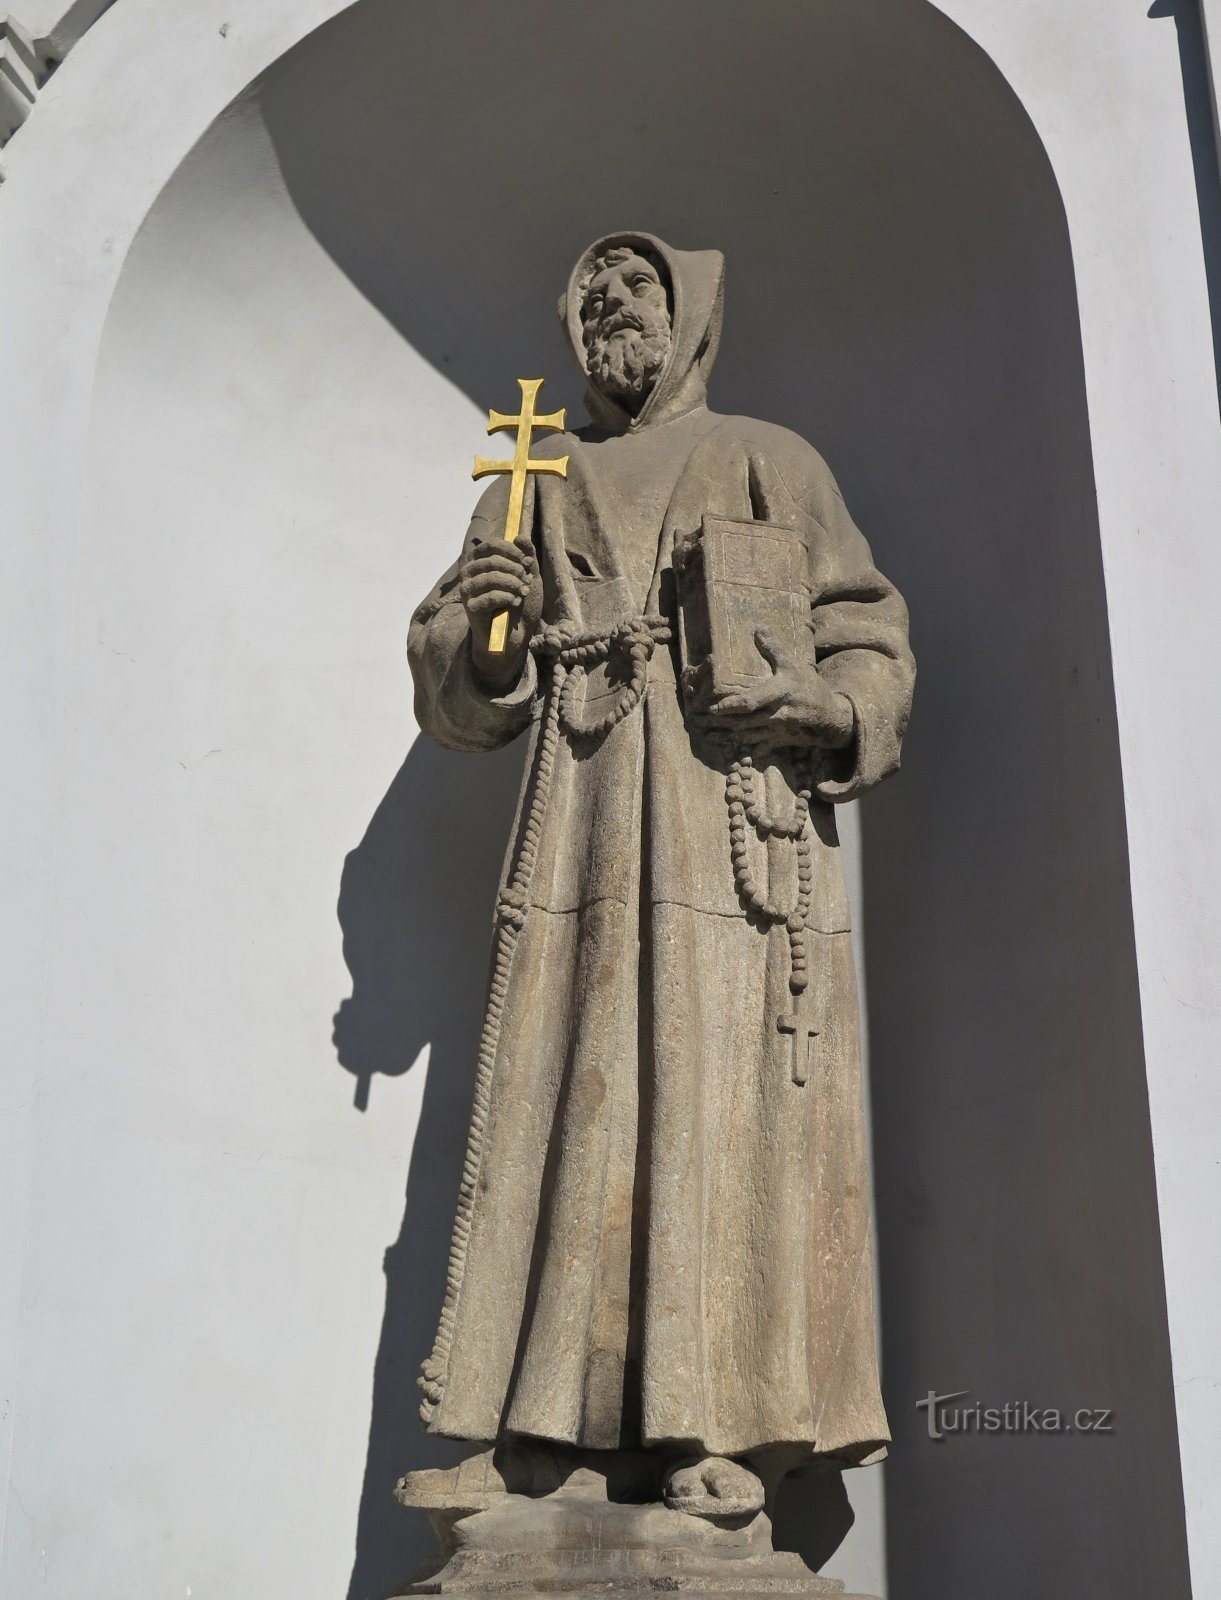 Прага (Нове-Место) – тревожная судьба Франциска Ассизского из св. Иосифа (статуя св. о.